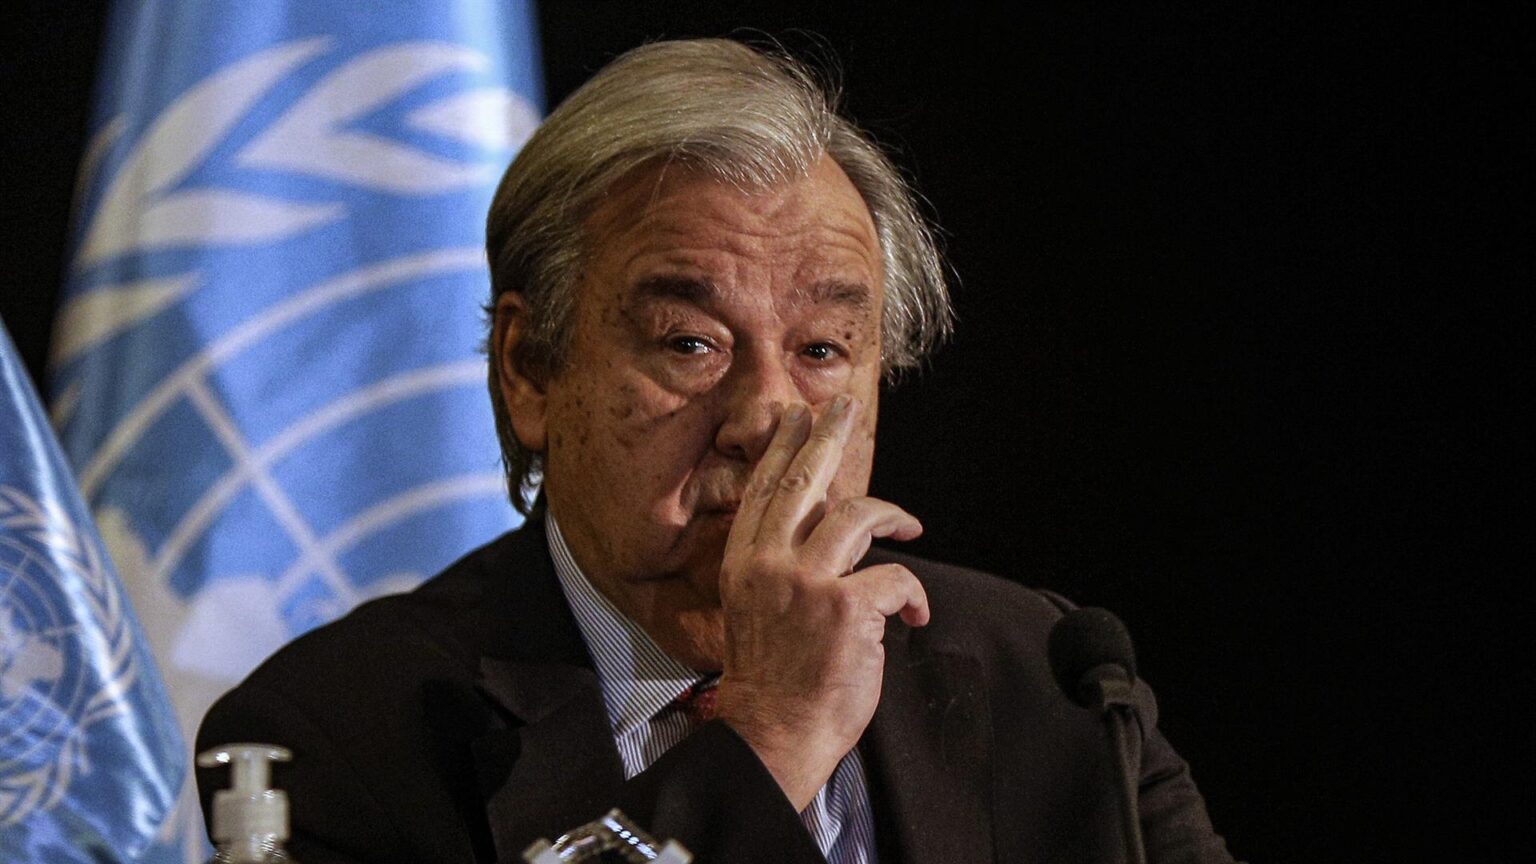 La ONU nombra a un mediador para lograr un «alto el fuego humanitario» en Ucrania